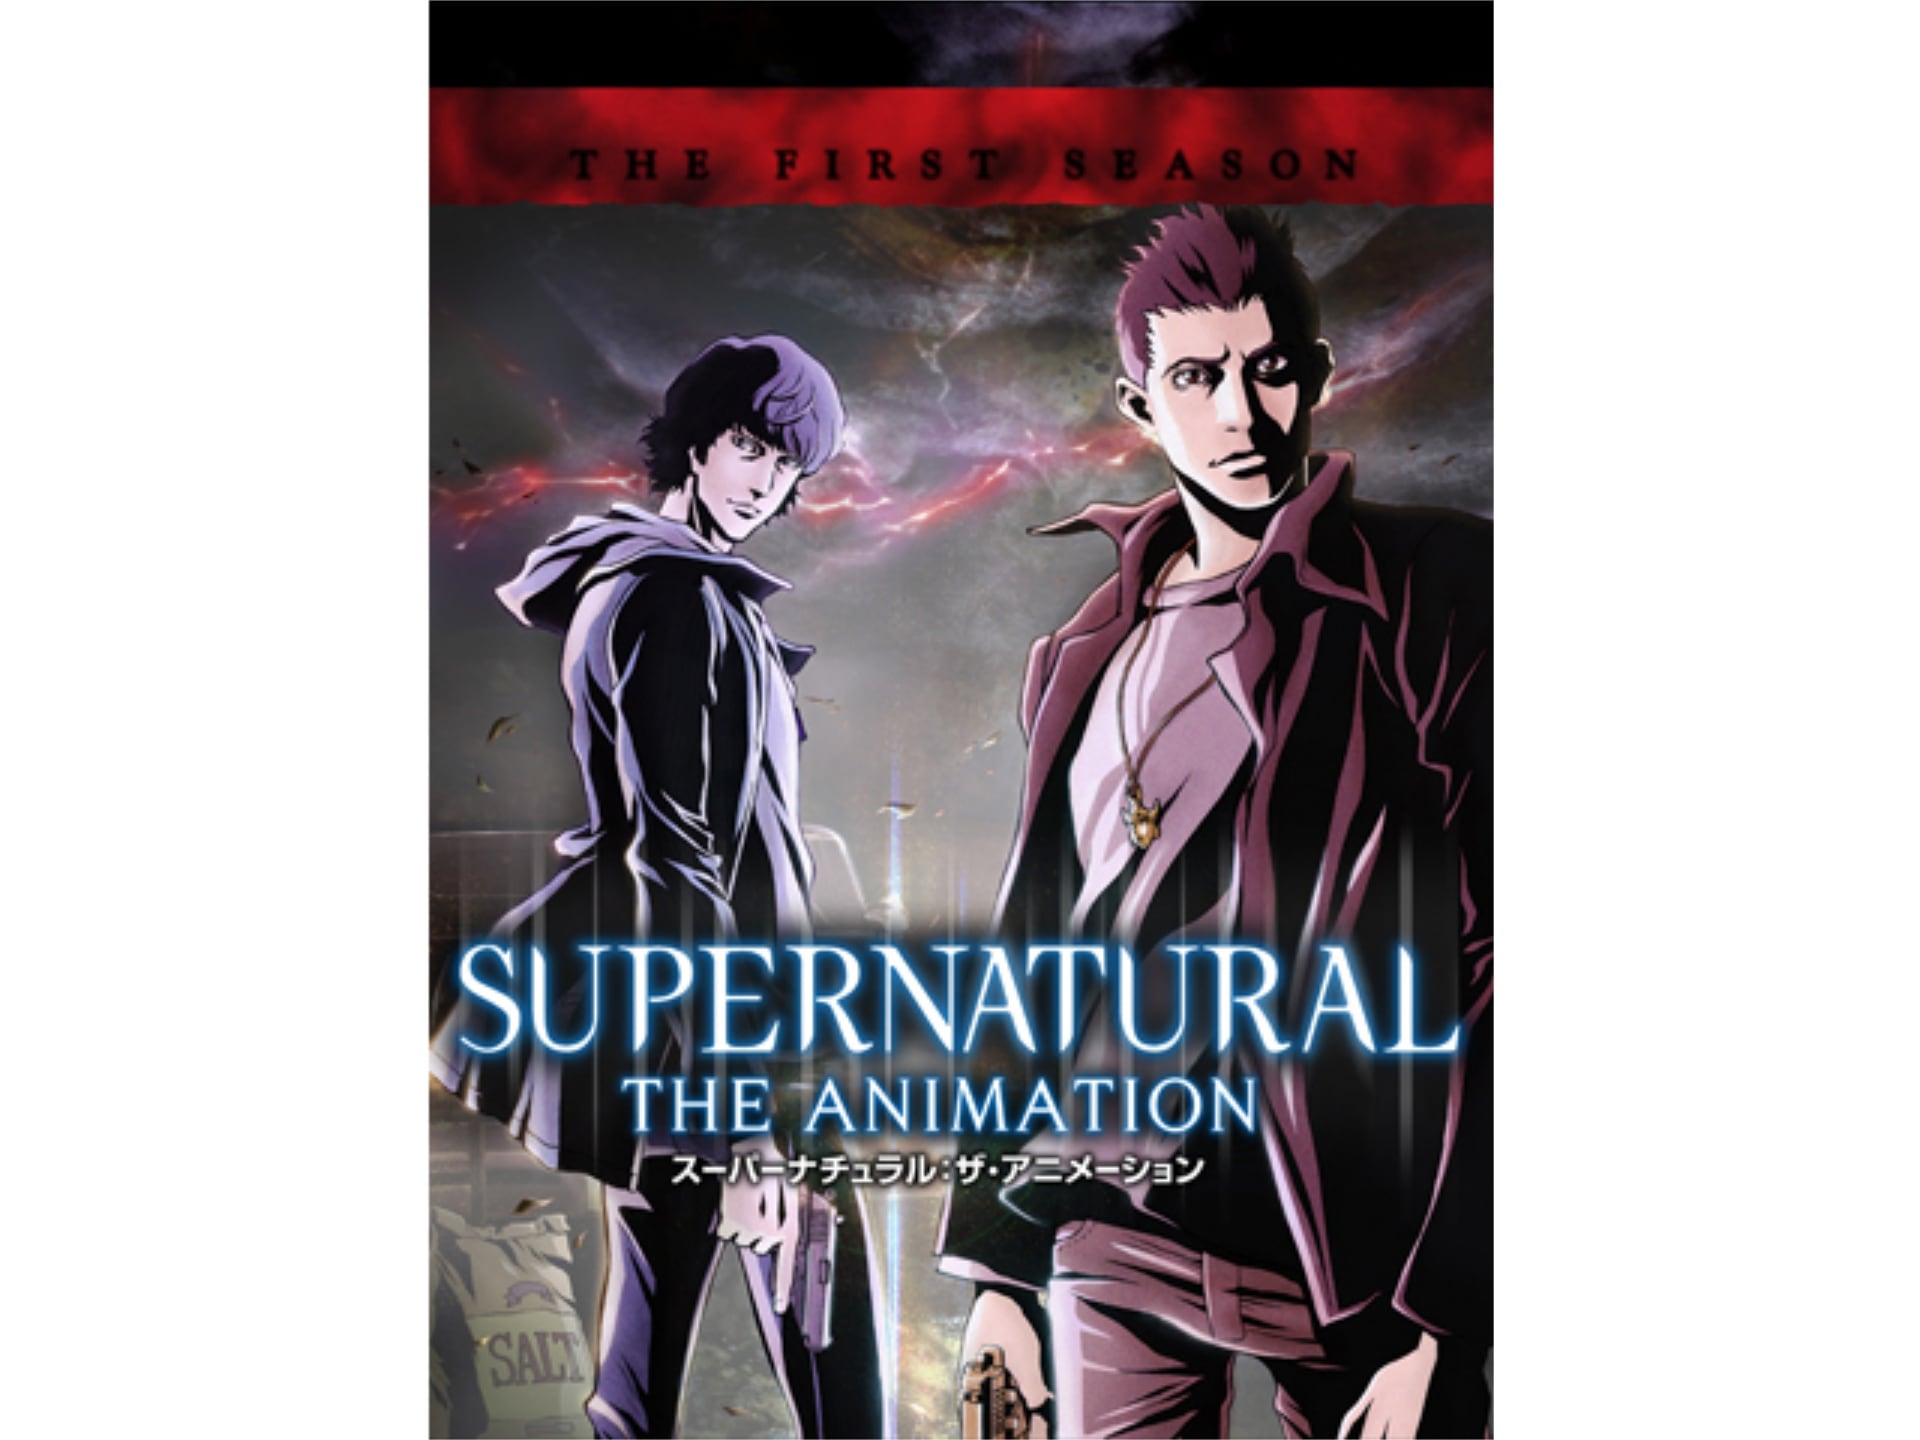 アニメ Supernatural The Animation ファースト シーズン の動画まとめ 初月無料 動画配信サービスのビデオマーケット